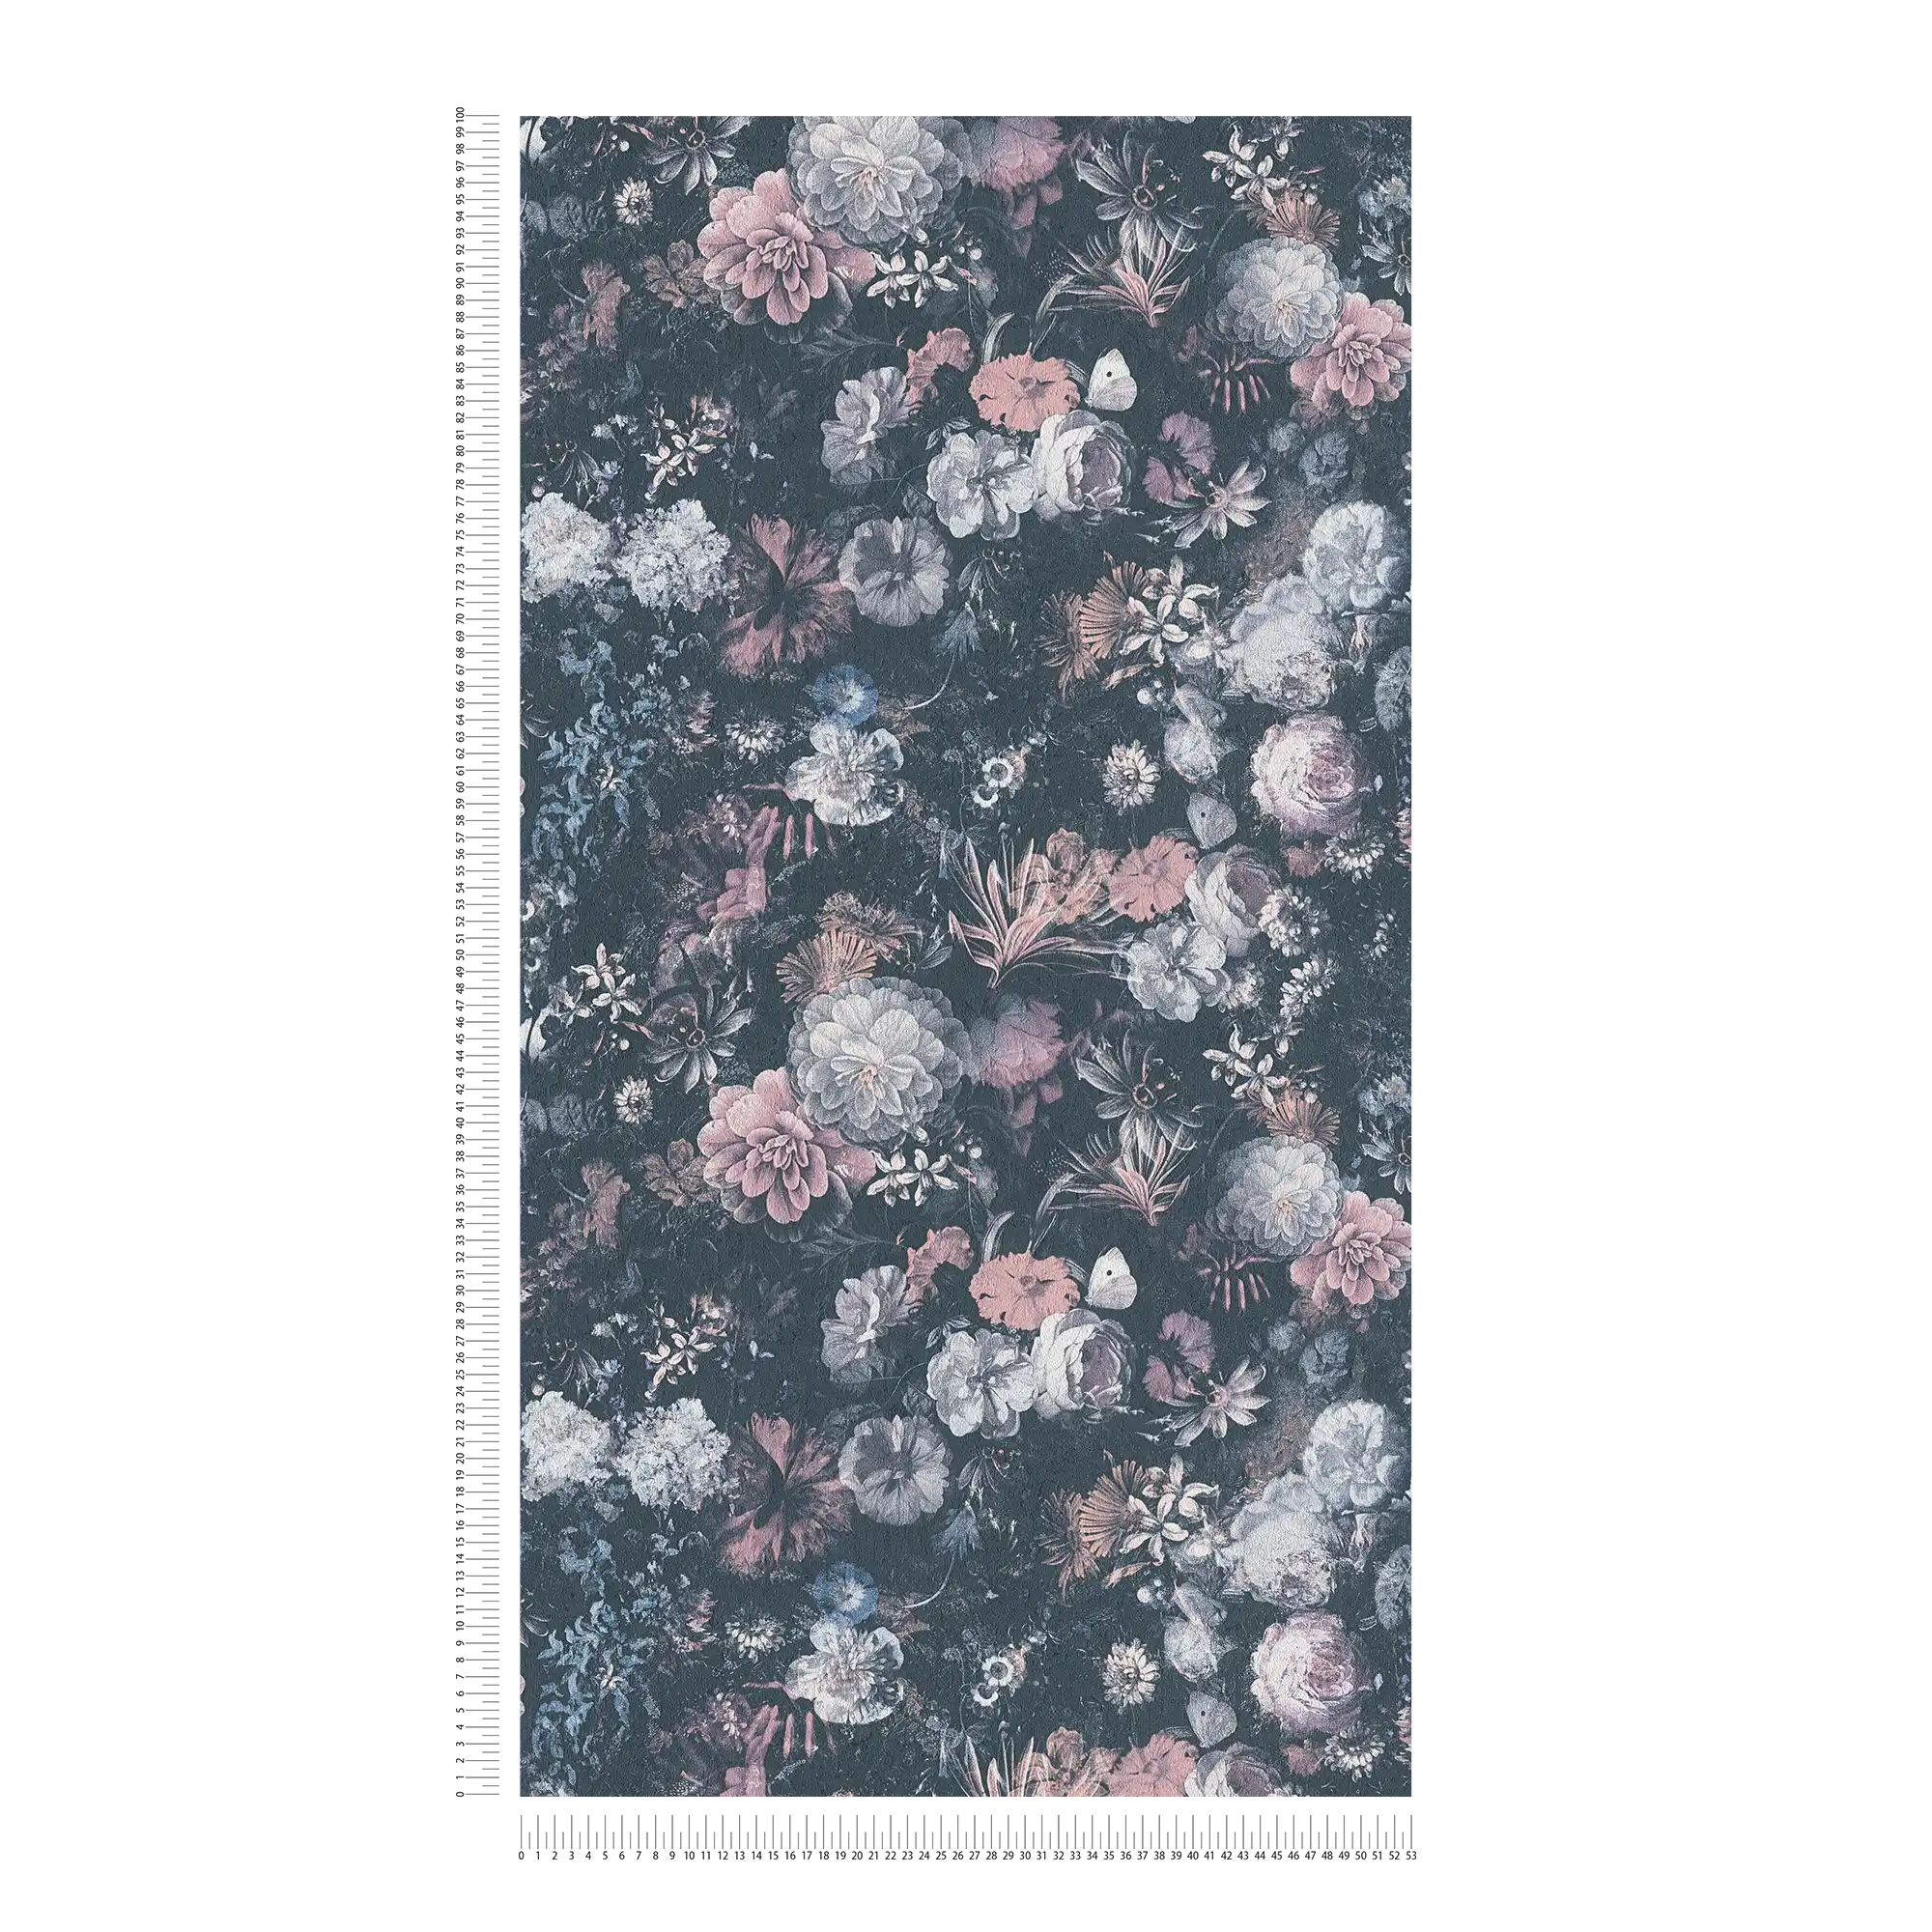             Papel Pintado Floral Rosas con Efecto Textura - Gris, Rosa
        